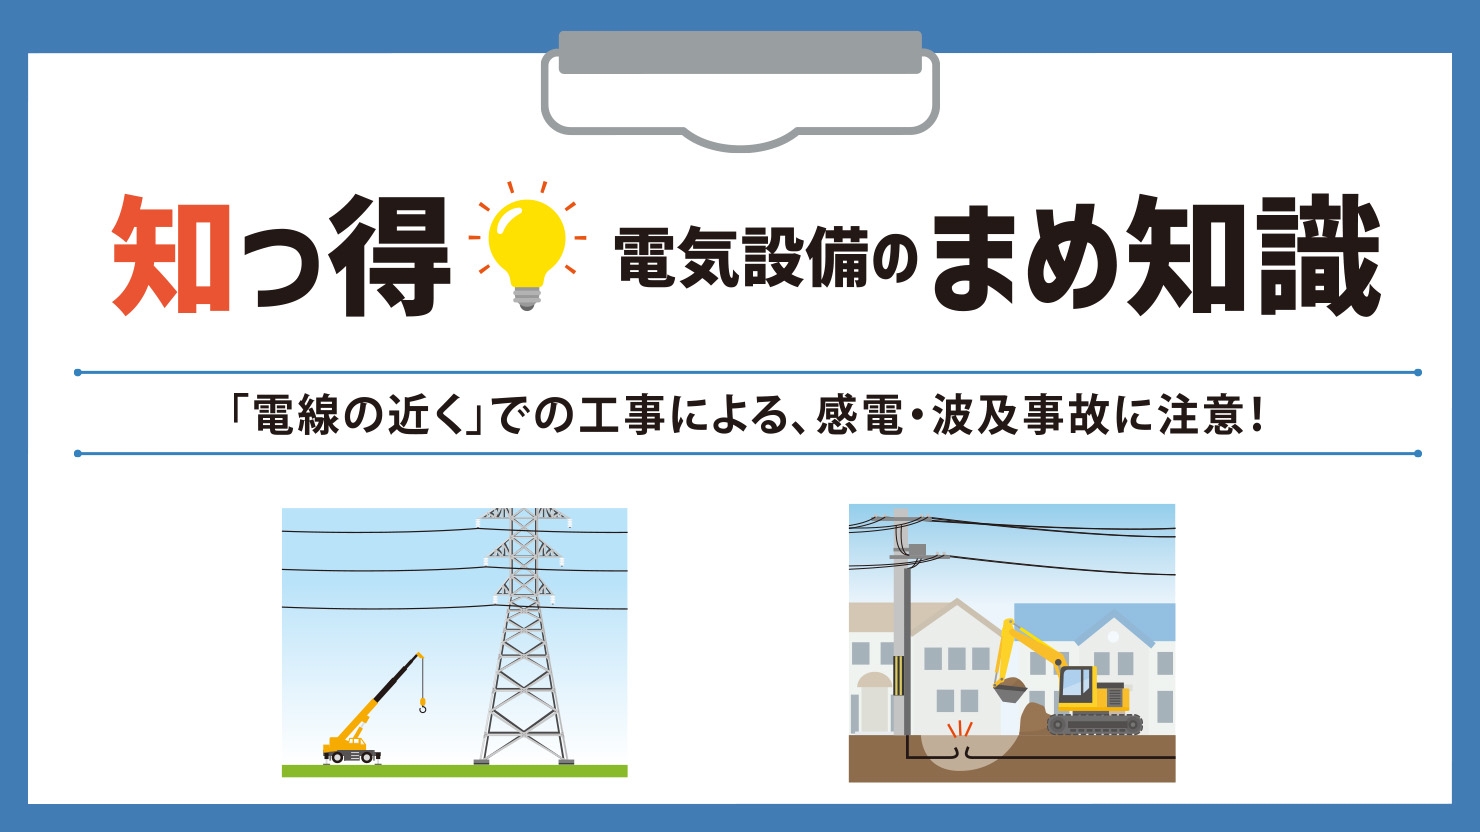 「電線の近く」での工事による、感電・波及事故に注意！